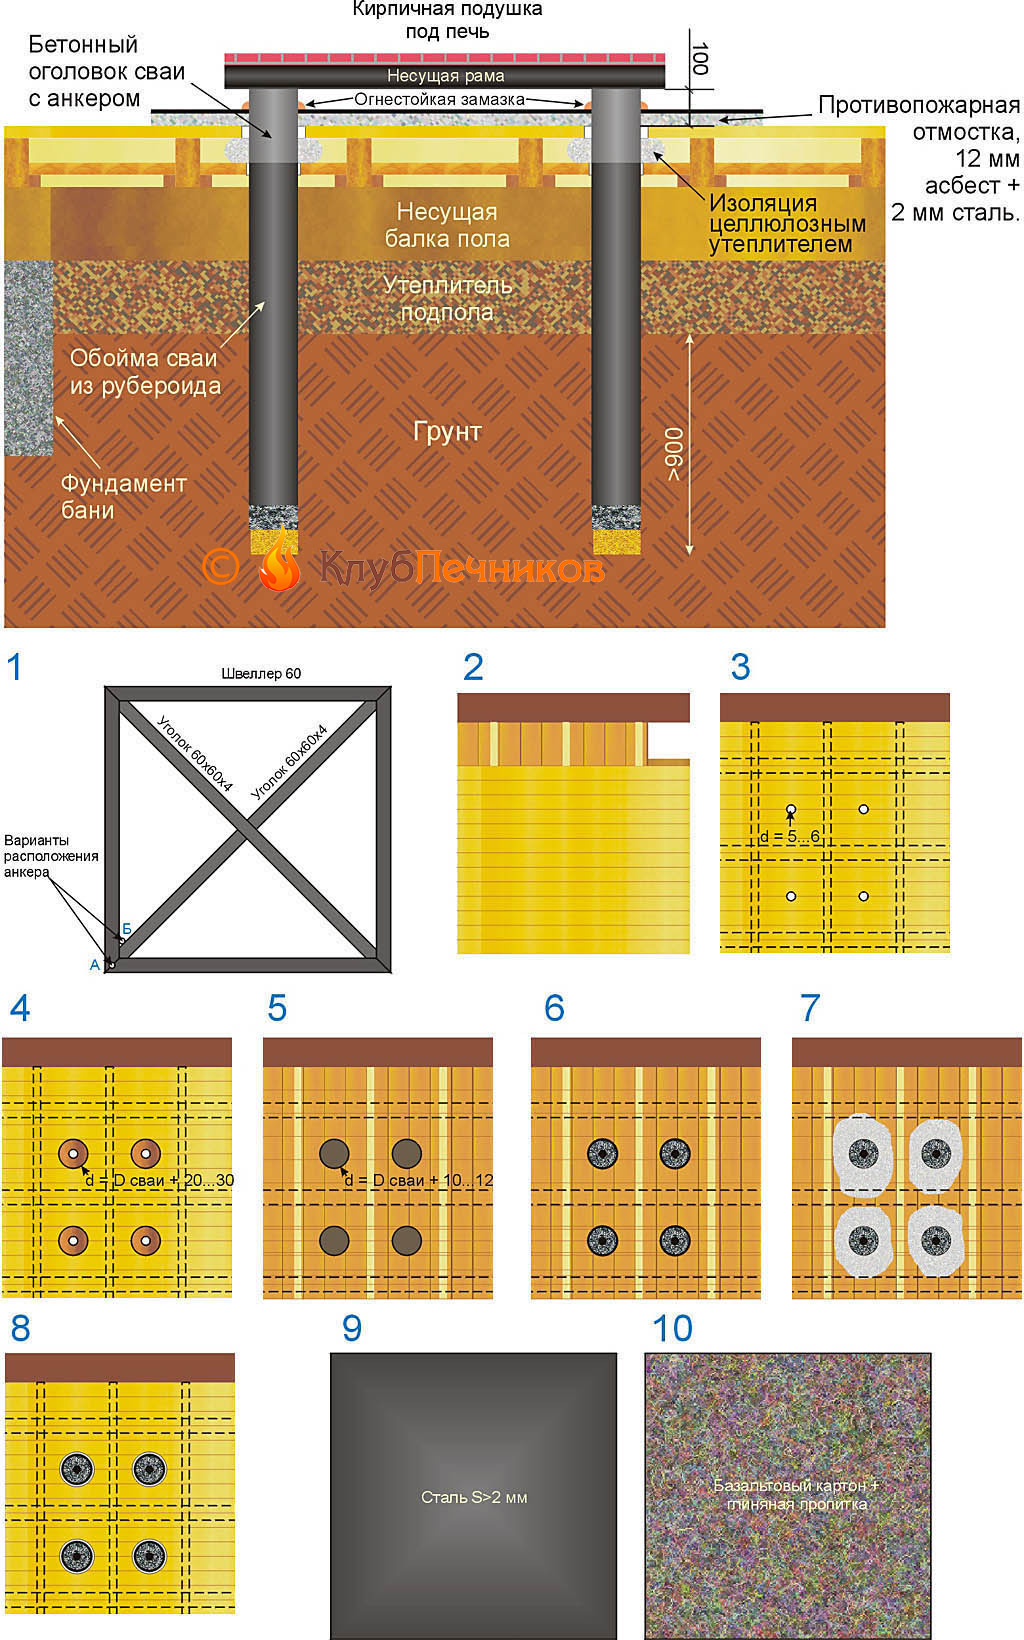 Схема устройства и порядок постройки свайного фундамента для печи сквозь пол